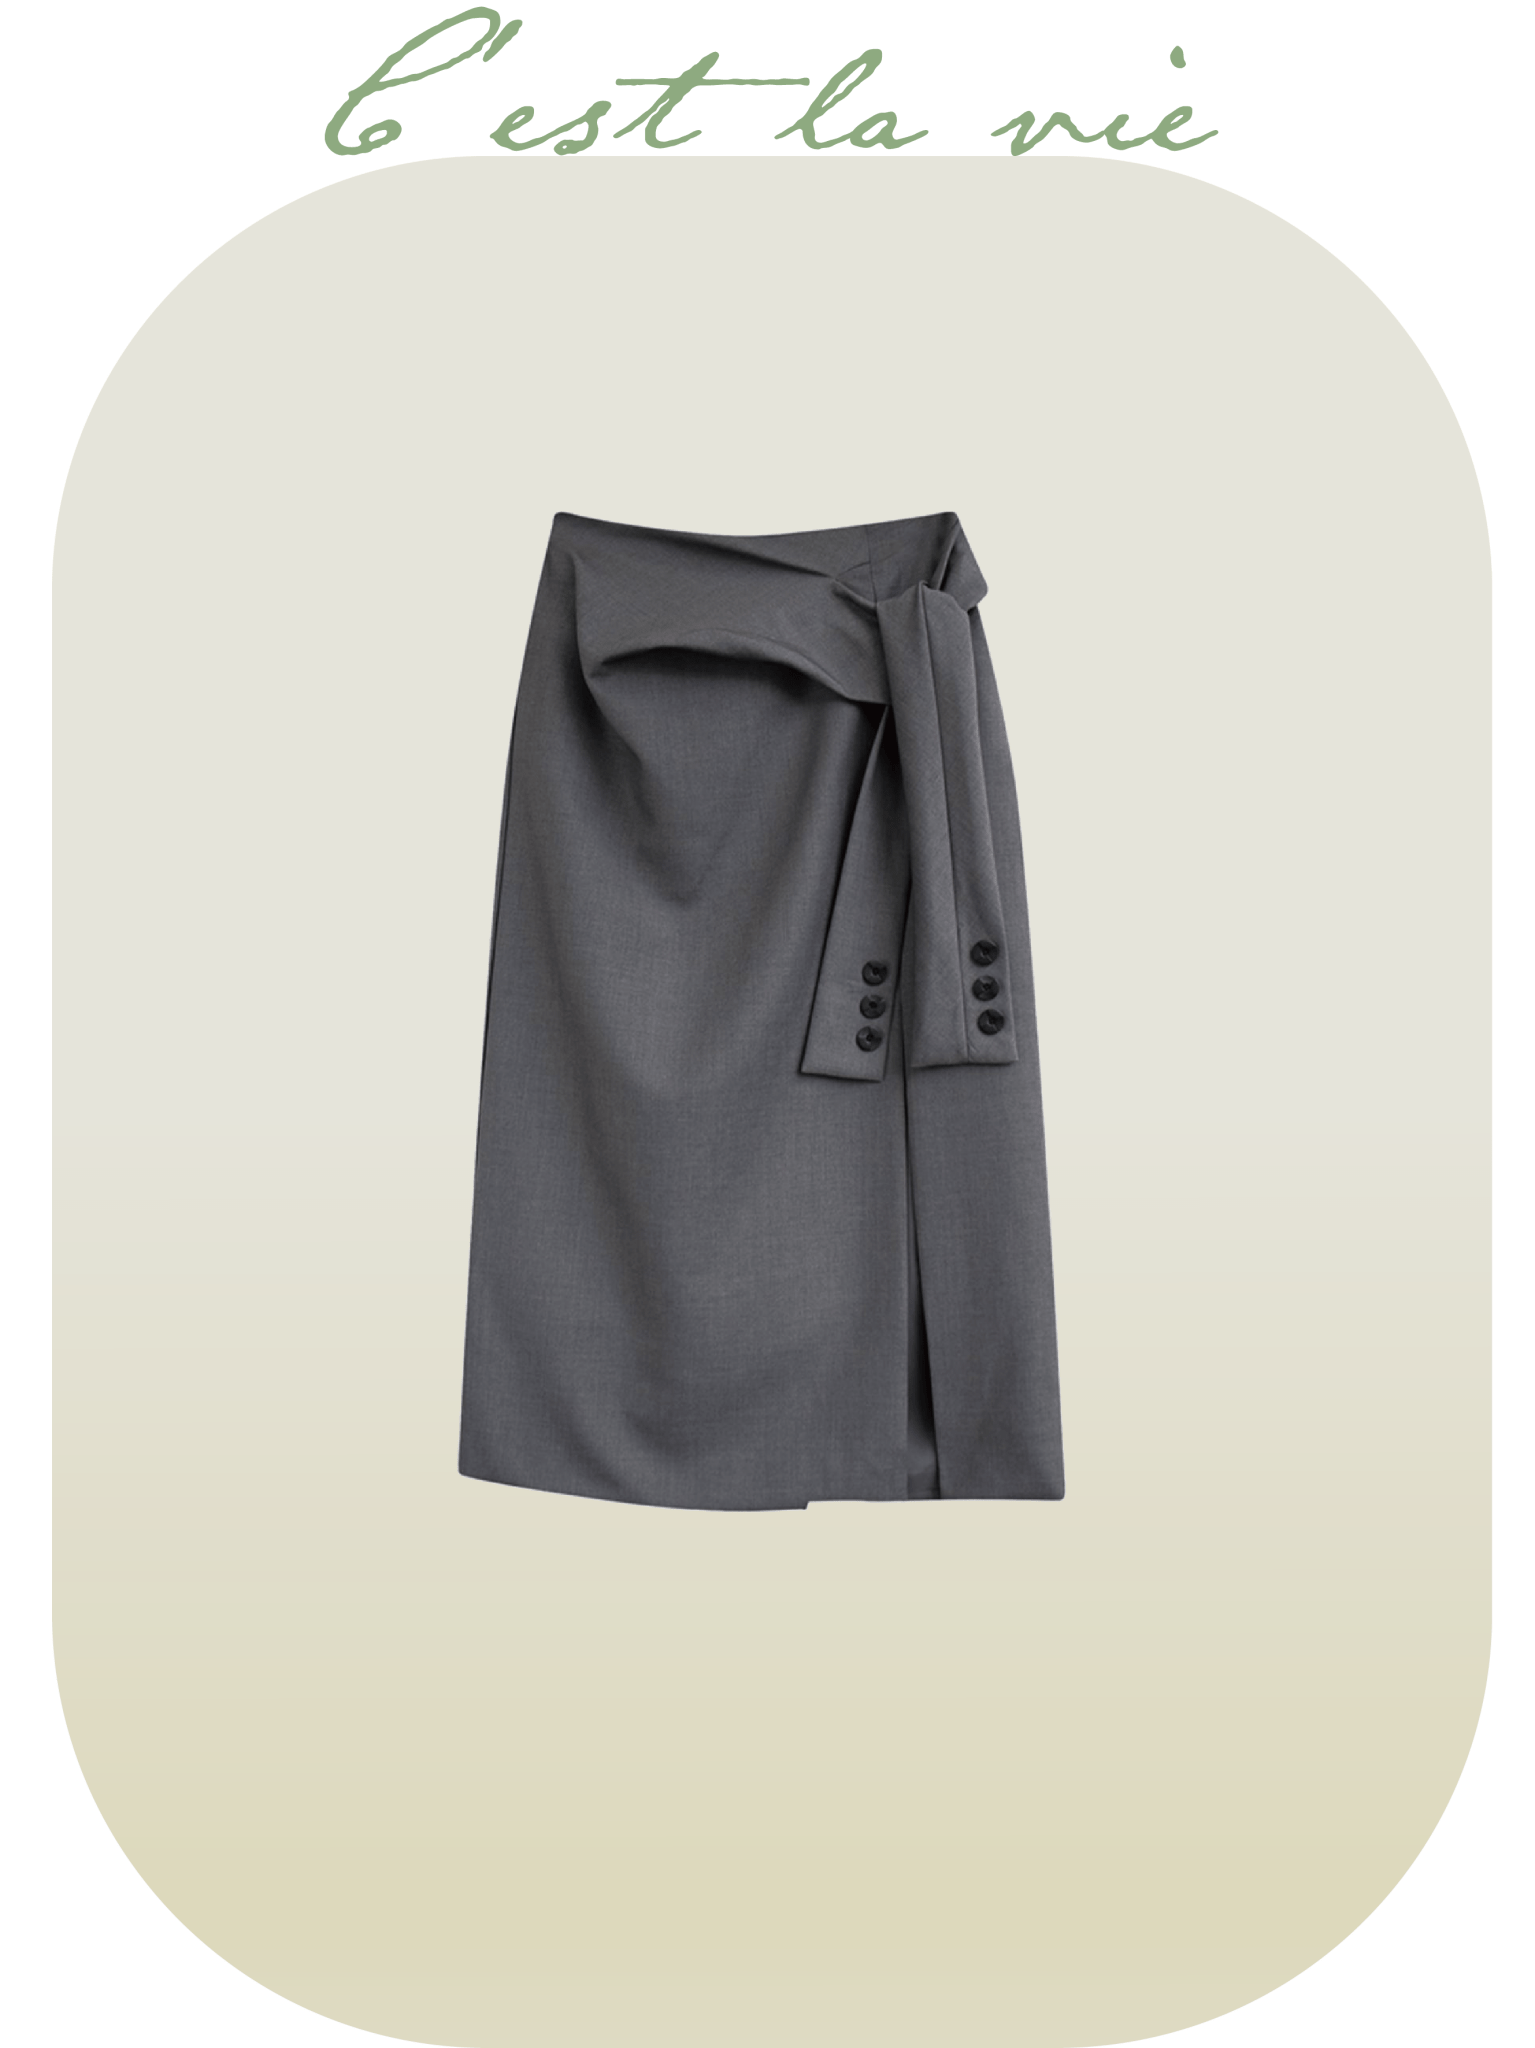 A-Type Design Skirt